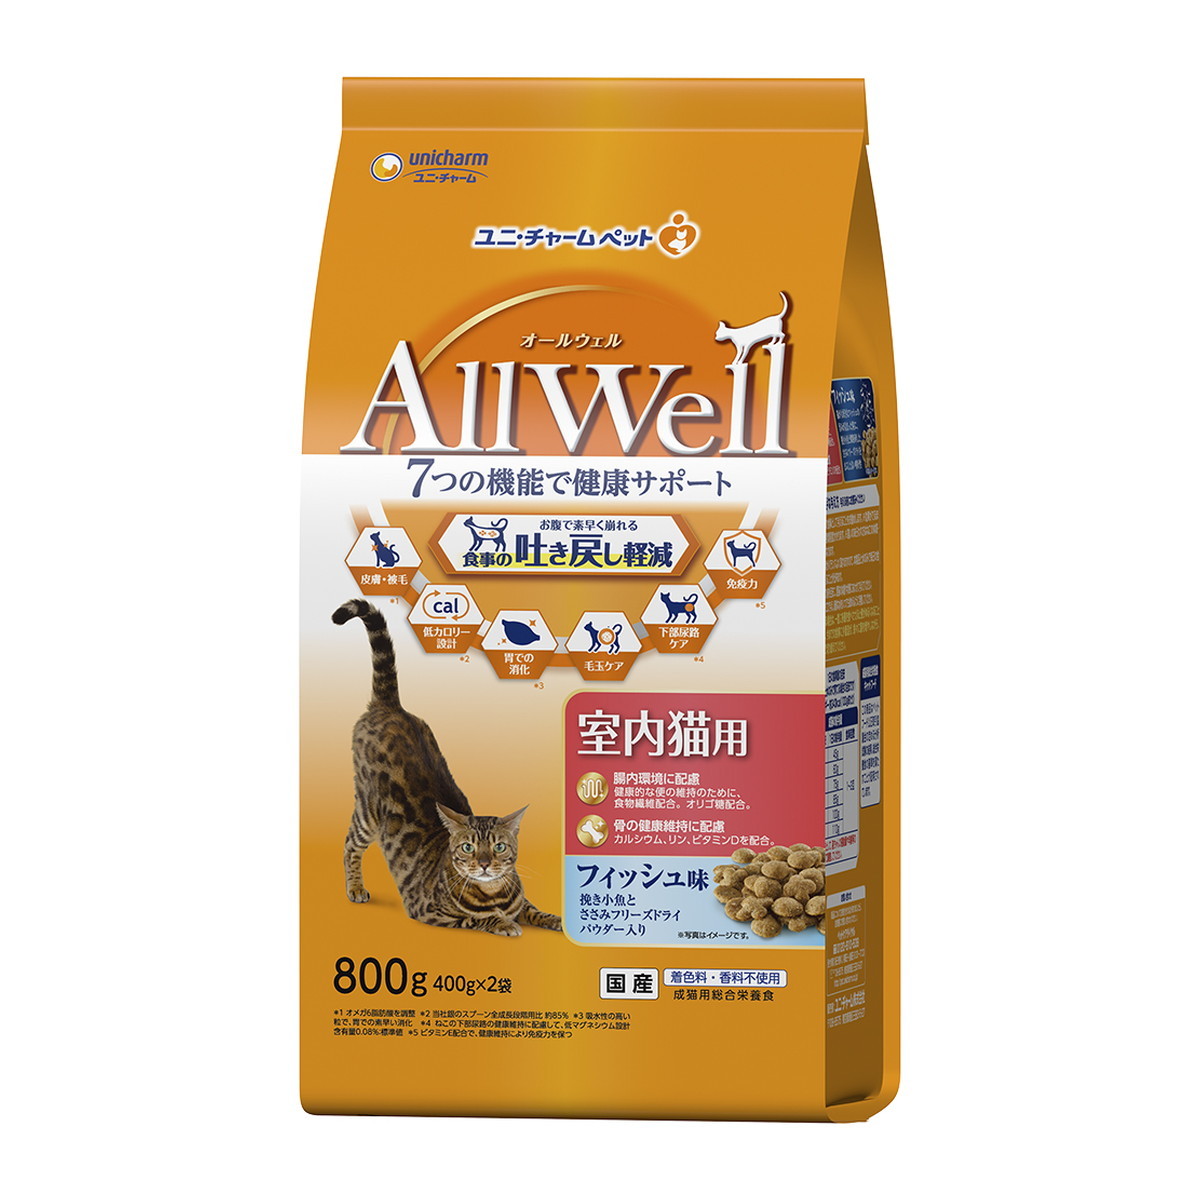 unicharm AllWell 室内猫用 フィッシュ味 800g（400g×2袋）×3個 ユニ・チャームペット AllWell 猫用ドライフードの商品画像